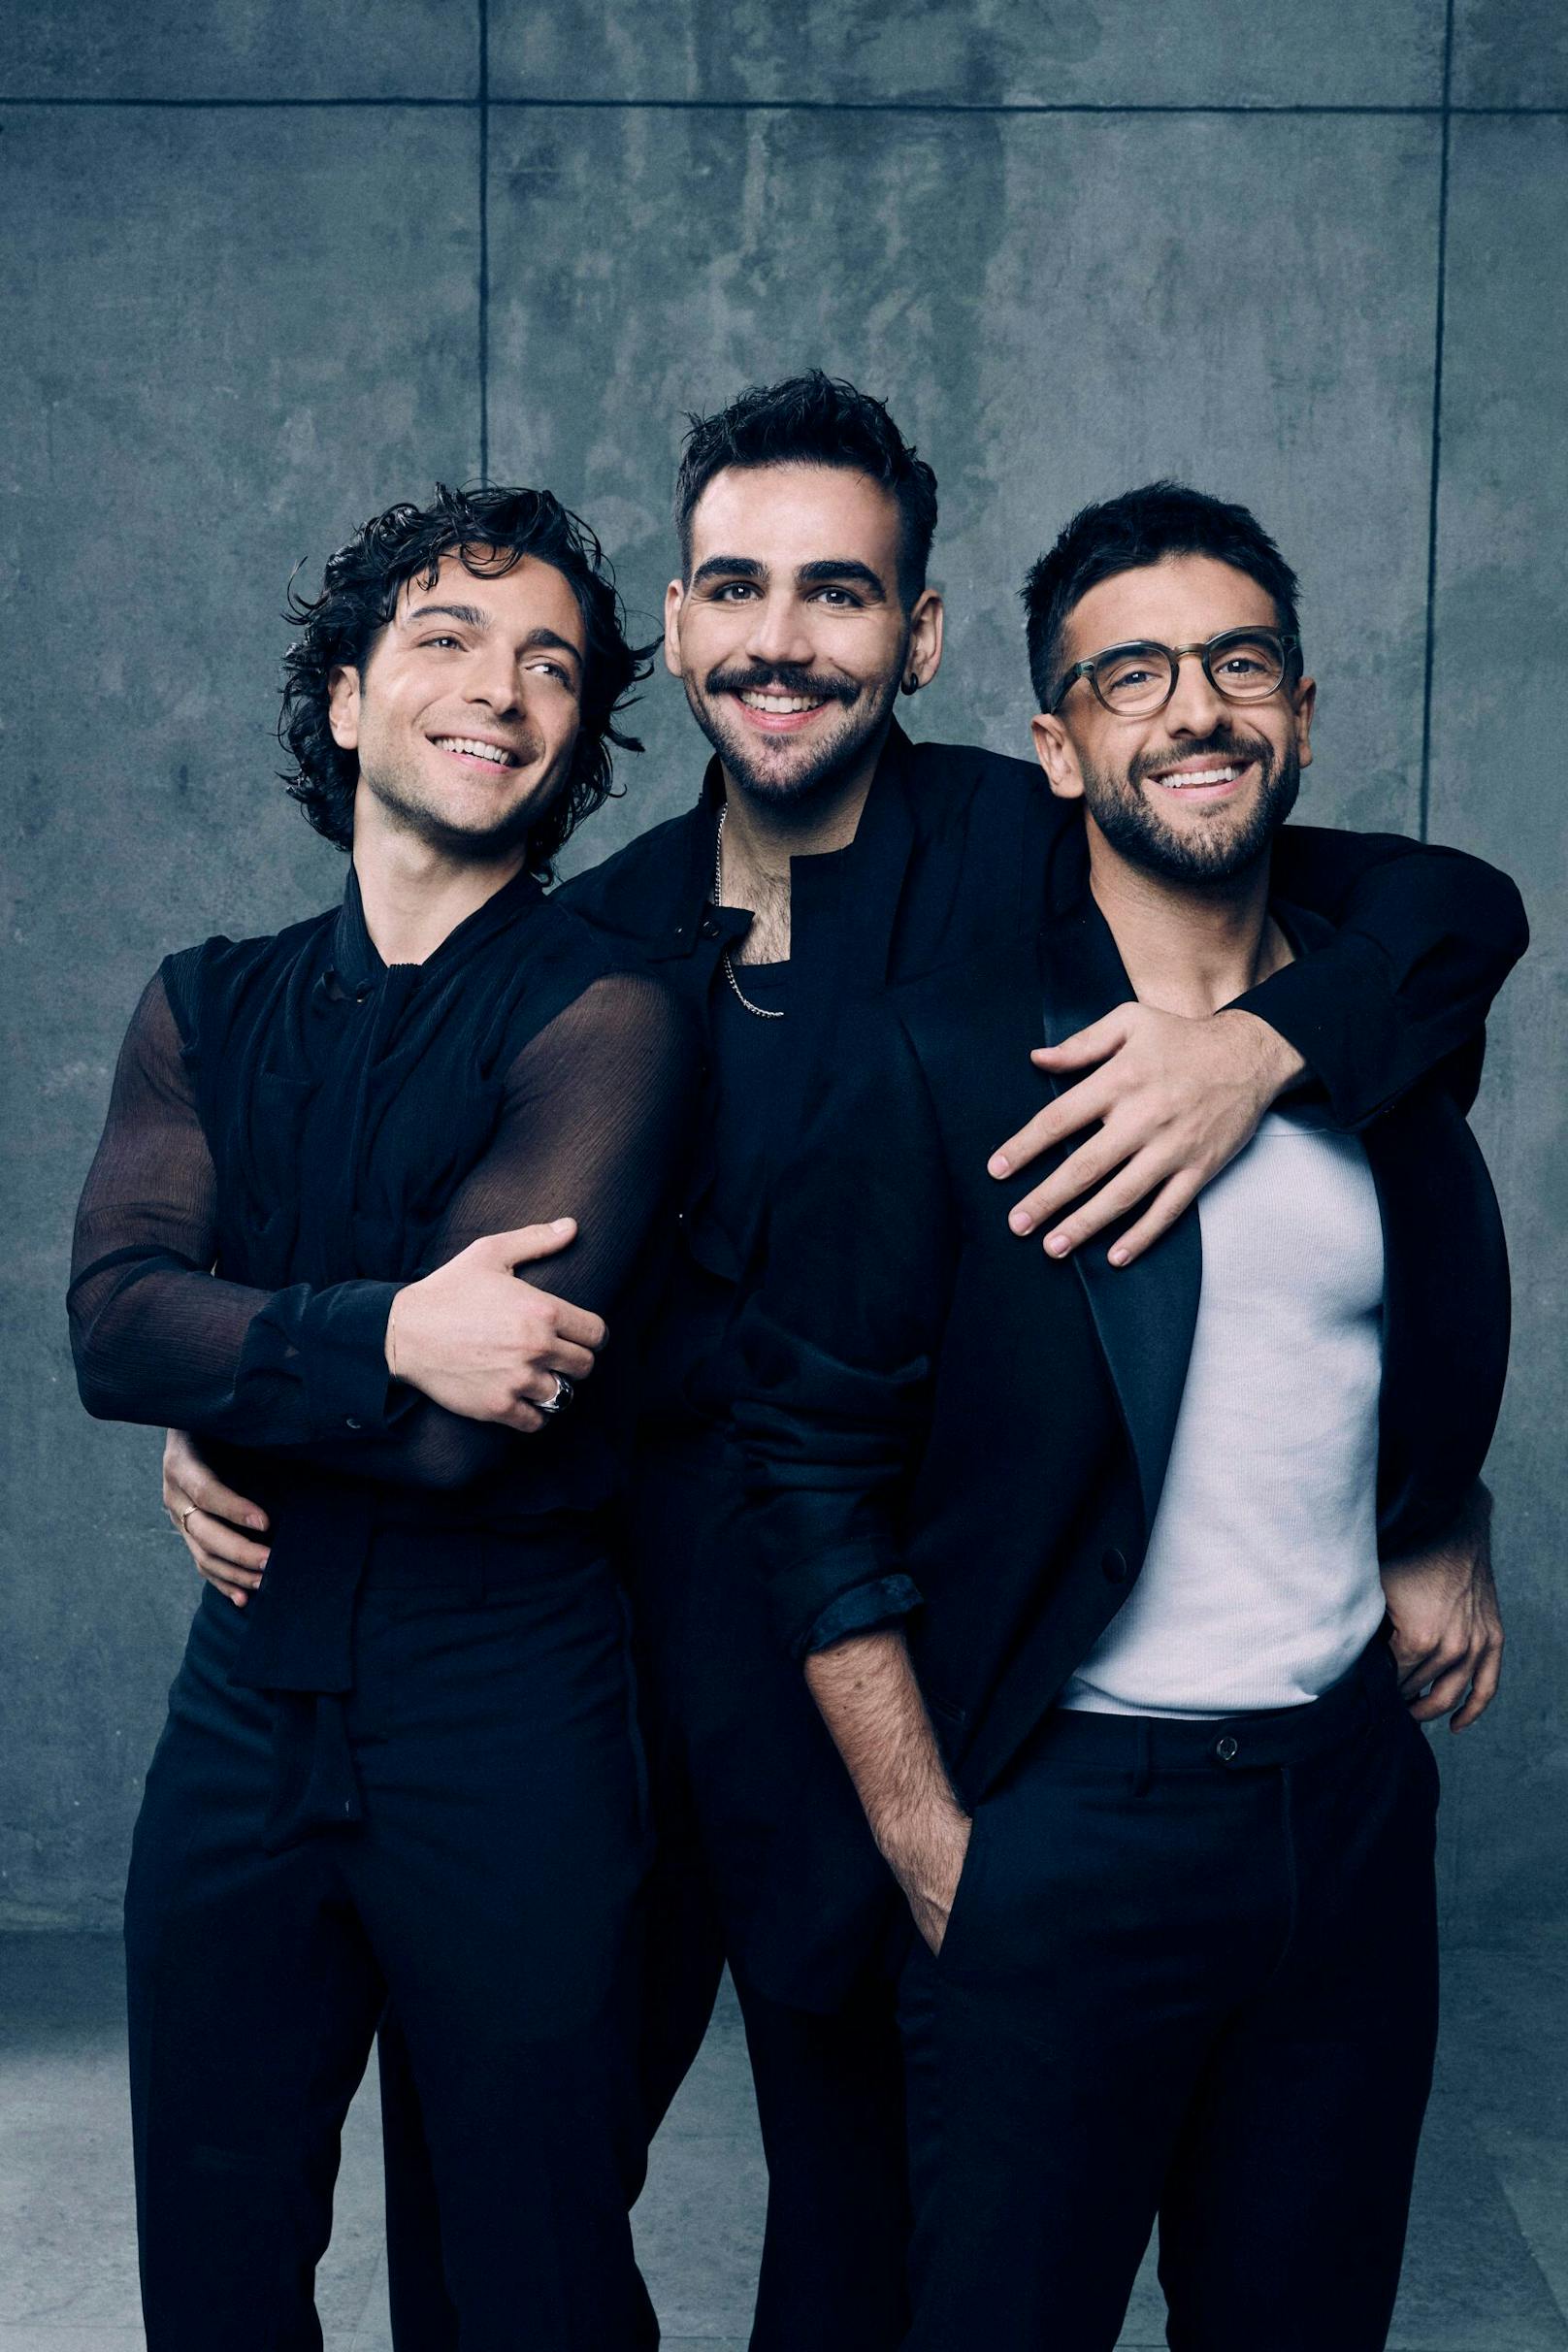 Die drei italienischen Tenöre von "Il Volo", Piero Barone, Ignazio Boschetto und Gianluca Ginoble, sind neu an Bord!